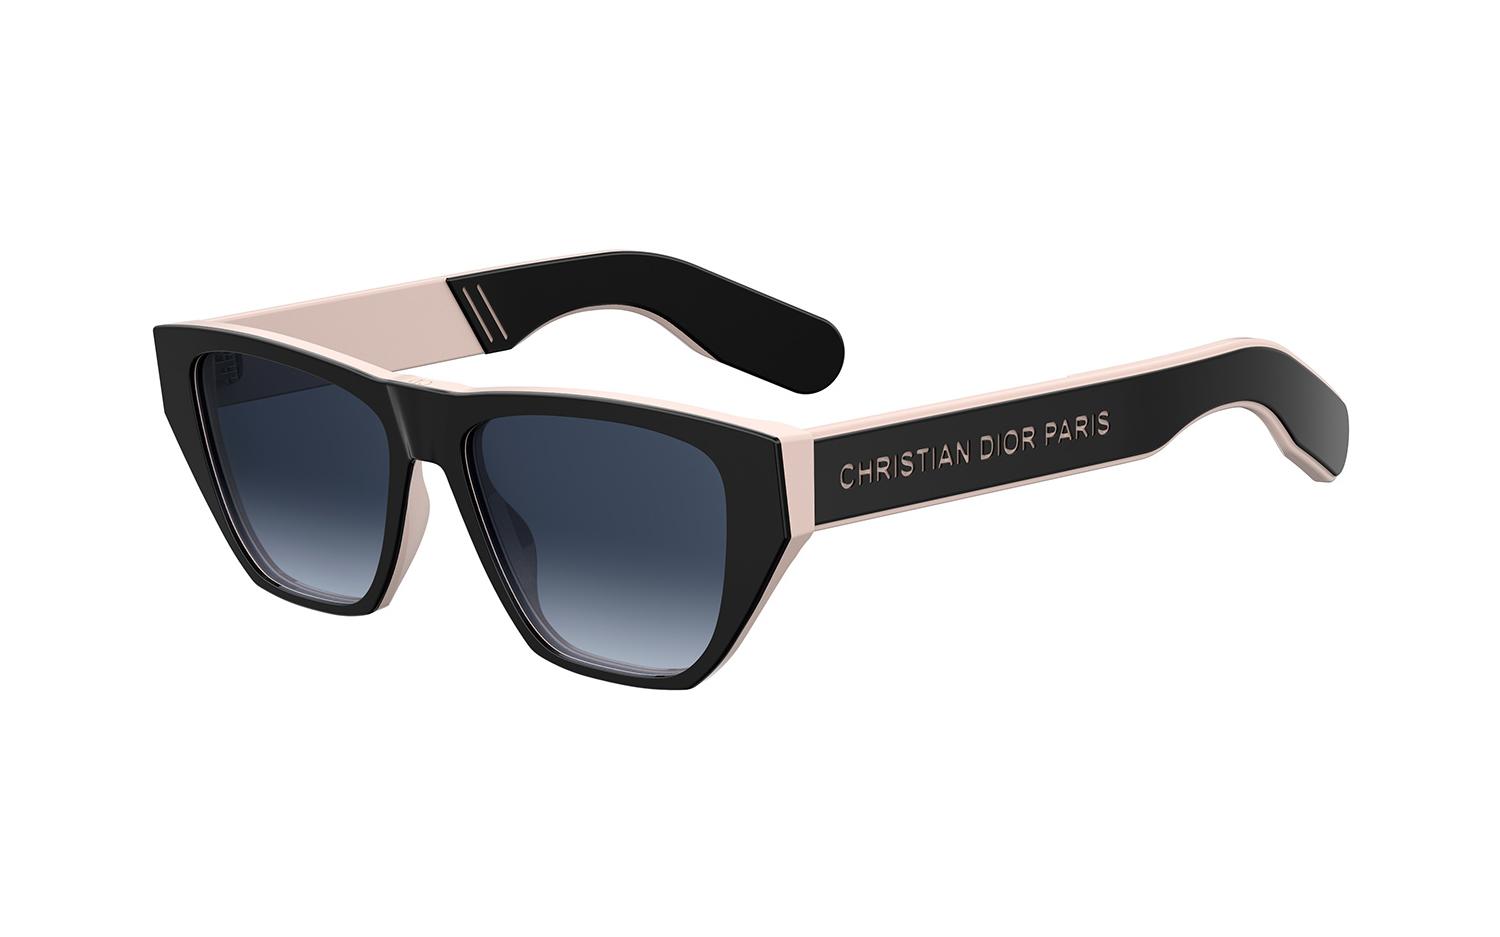 c dior sunglasses